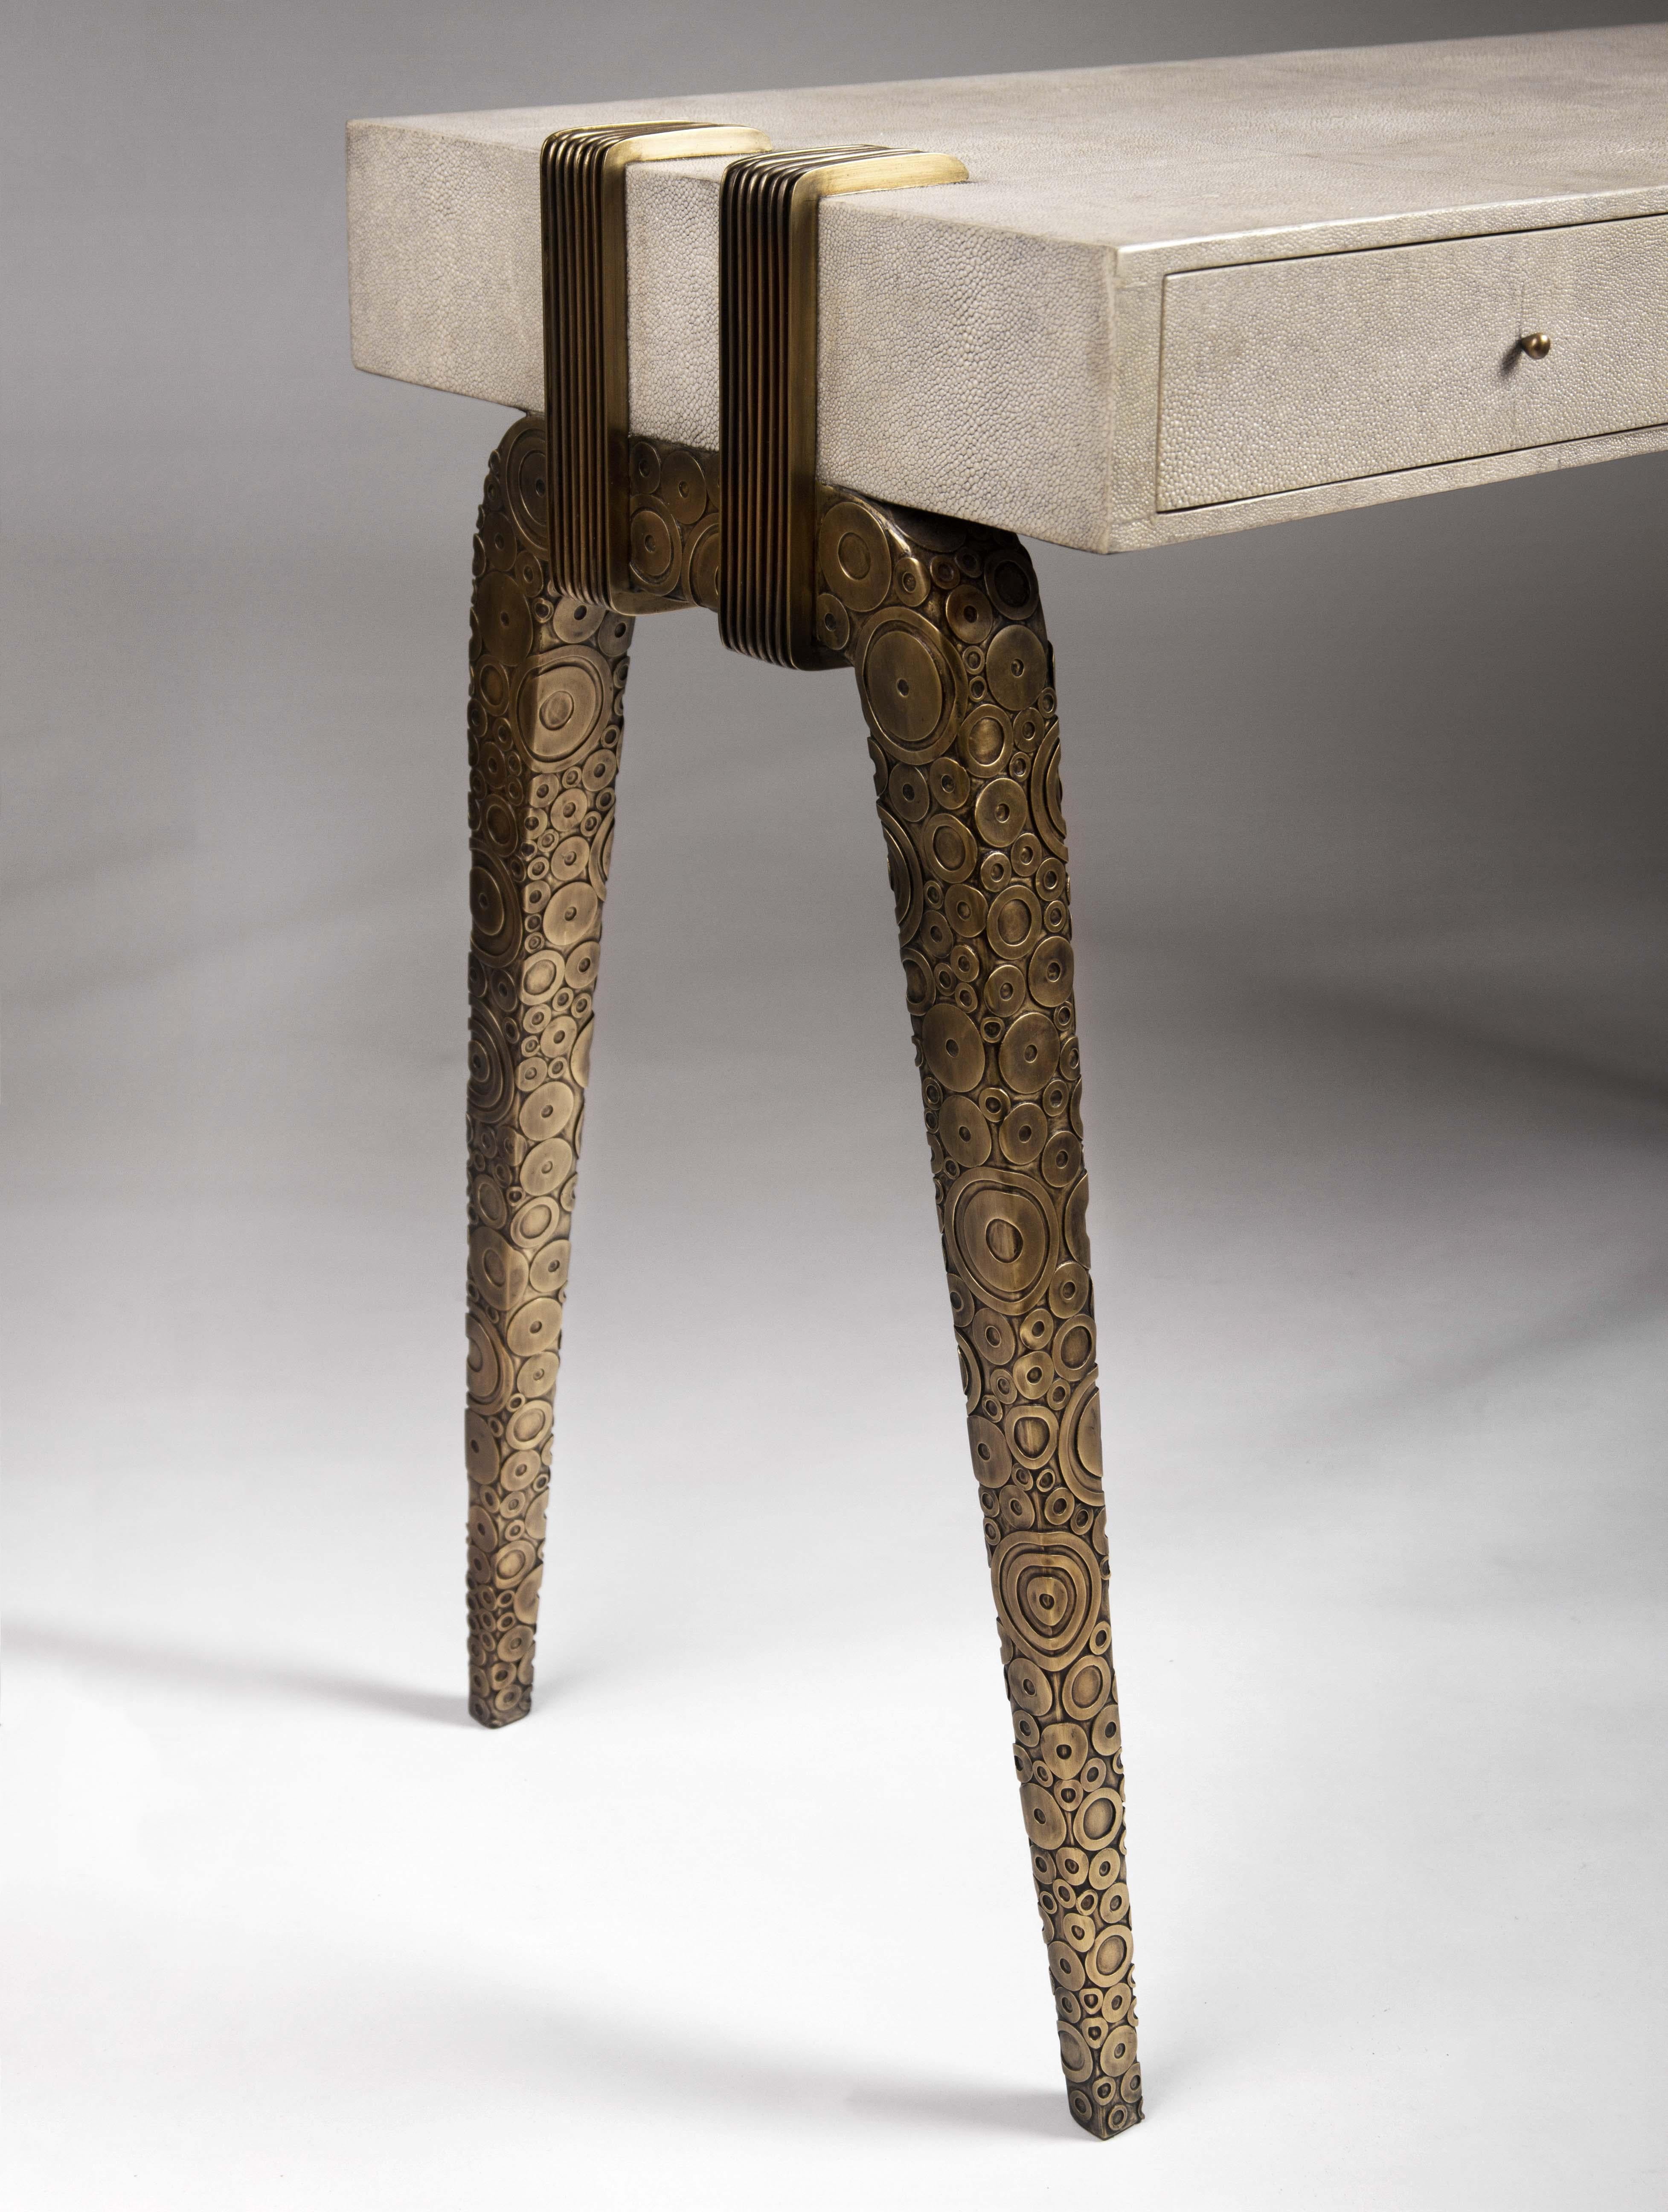 Art Deco Shagreen Writing Desk with Bright Brass Inlaid Legs by R&Y Augousti